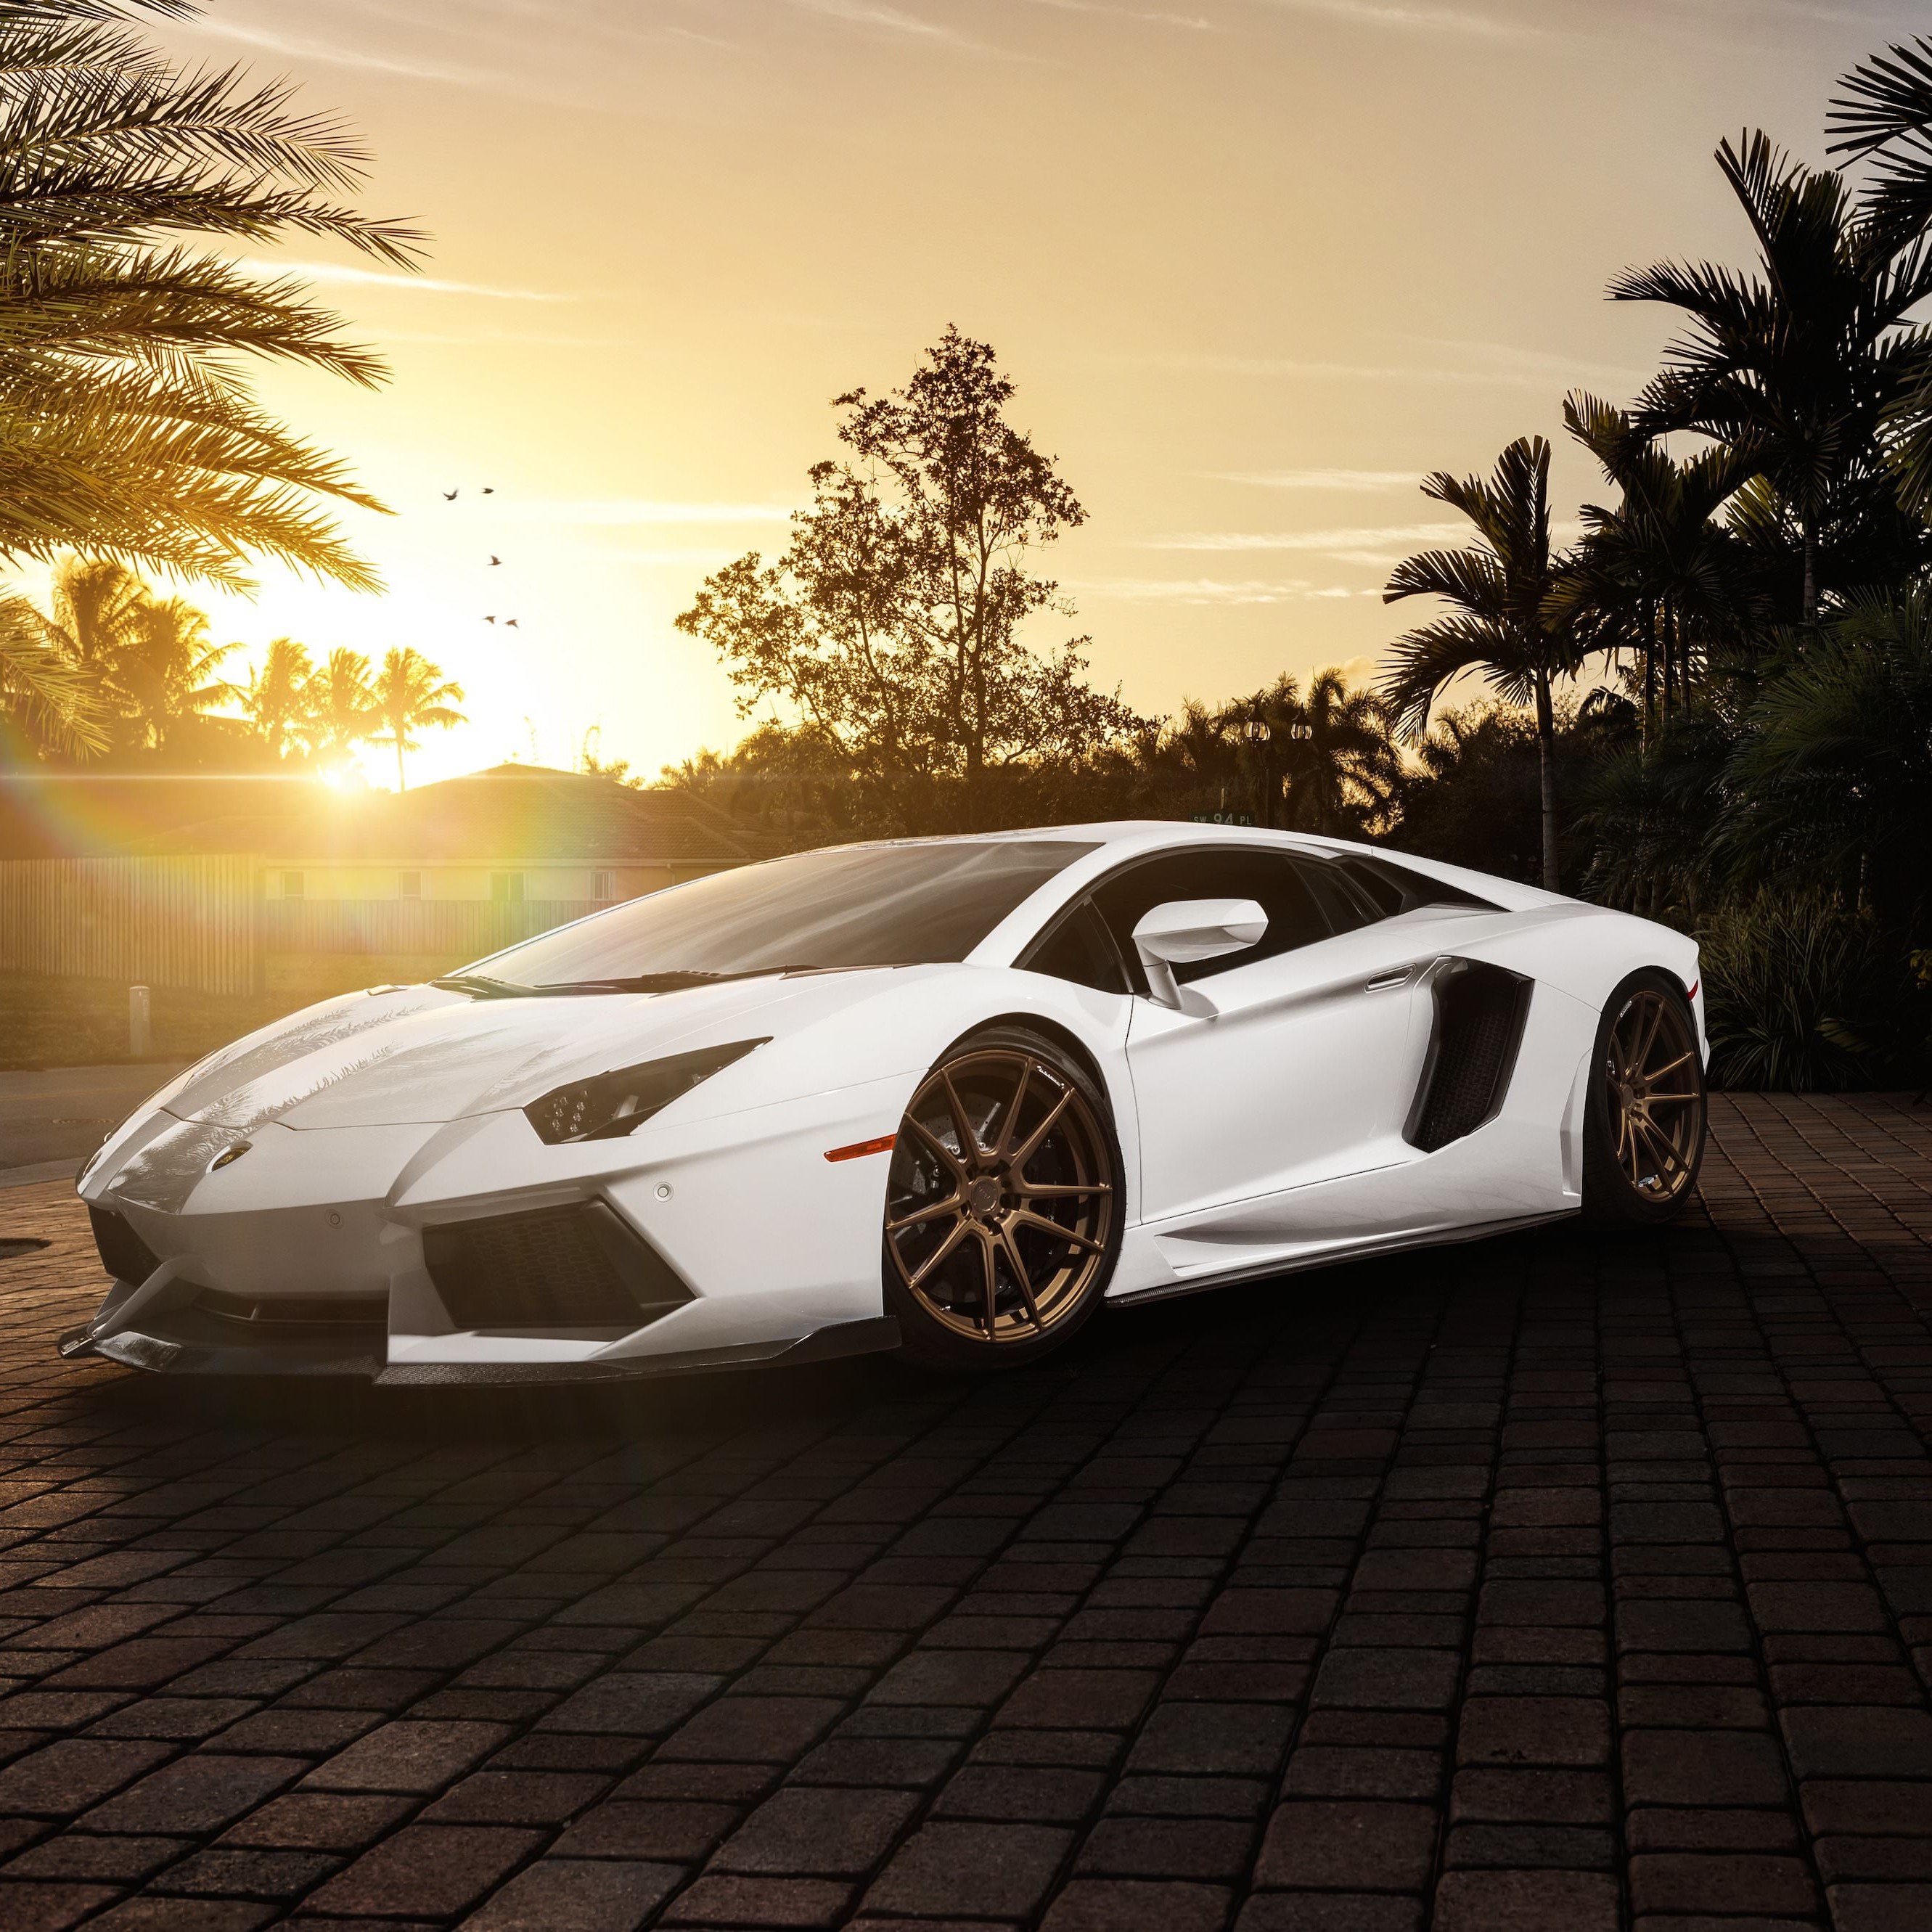 Lamborghini Aventador LP700-4 in White Wallpaper for Apple iPhone 6 Plus